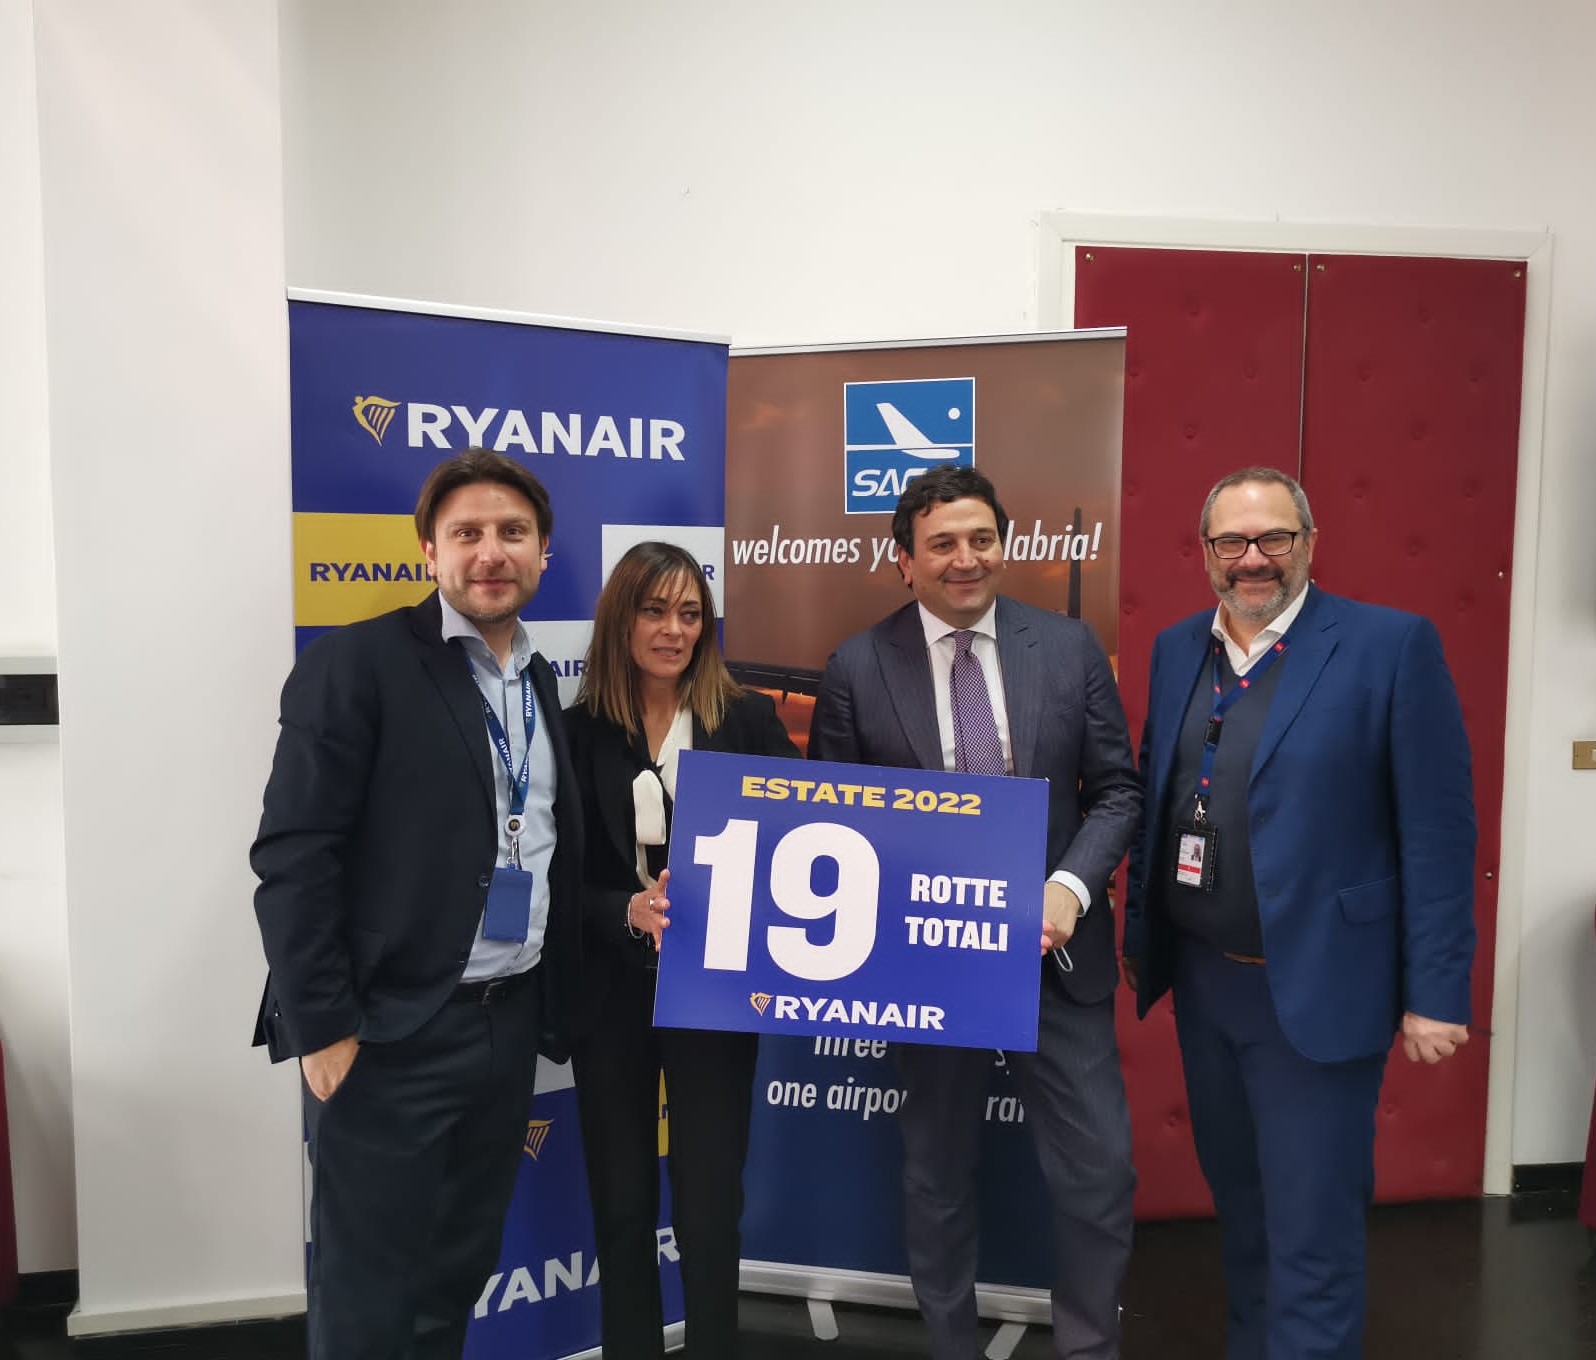 Ryanair Annuncia L’operativo Estivo Più Grande Di Sempre Sulla Calabria 19 Rotte In Totale (5 Nuove)